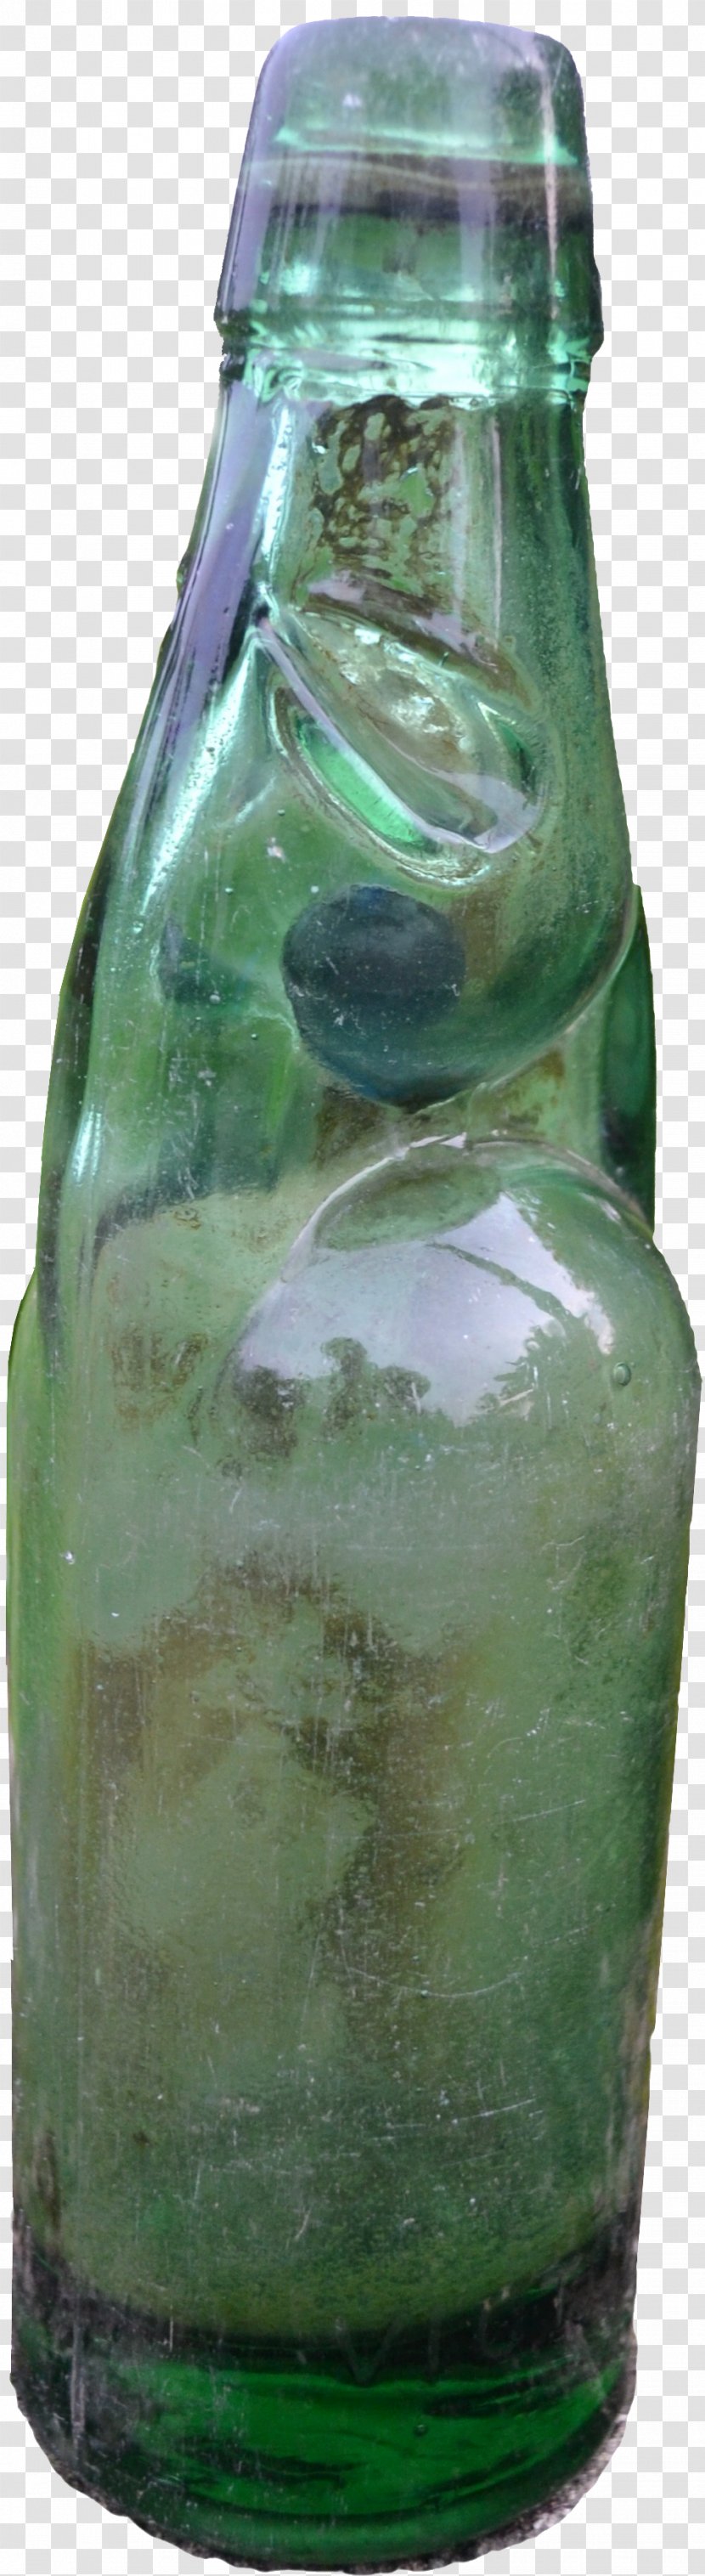 Banta Carbonated Water Fizzy Drinks Bottle Lemon-lime Drink - Kerala Transparent PNG